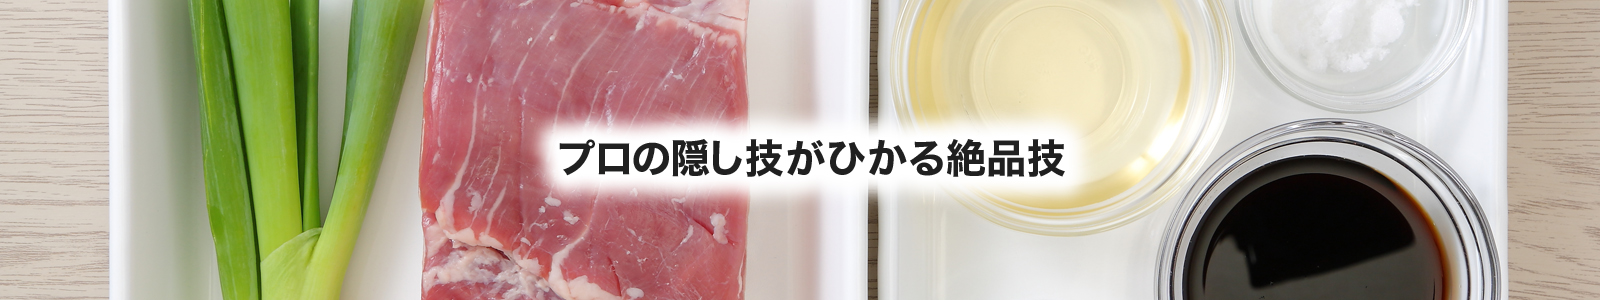 【湯煎調理レシピ】豚の角煮